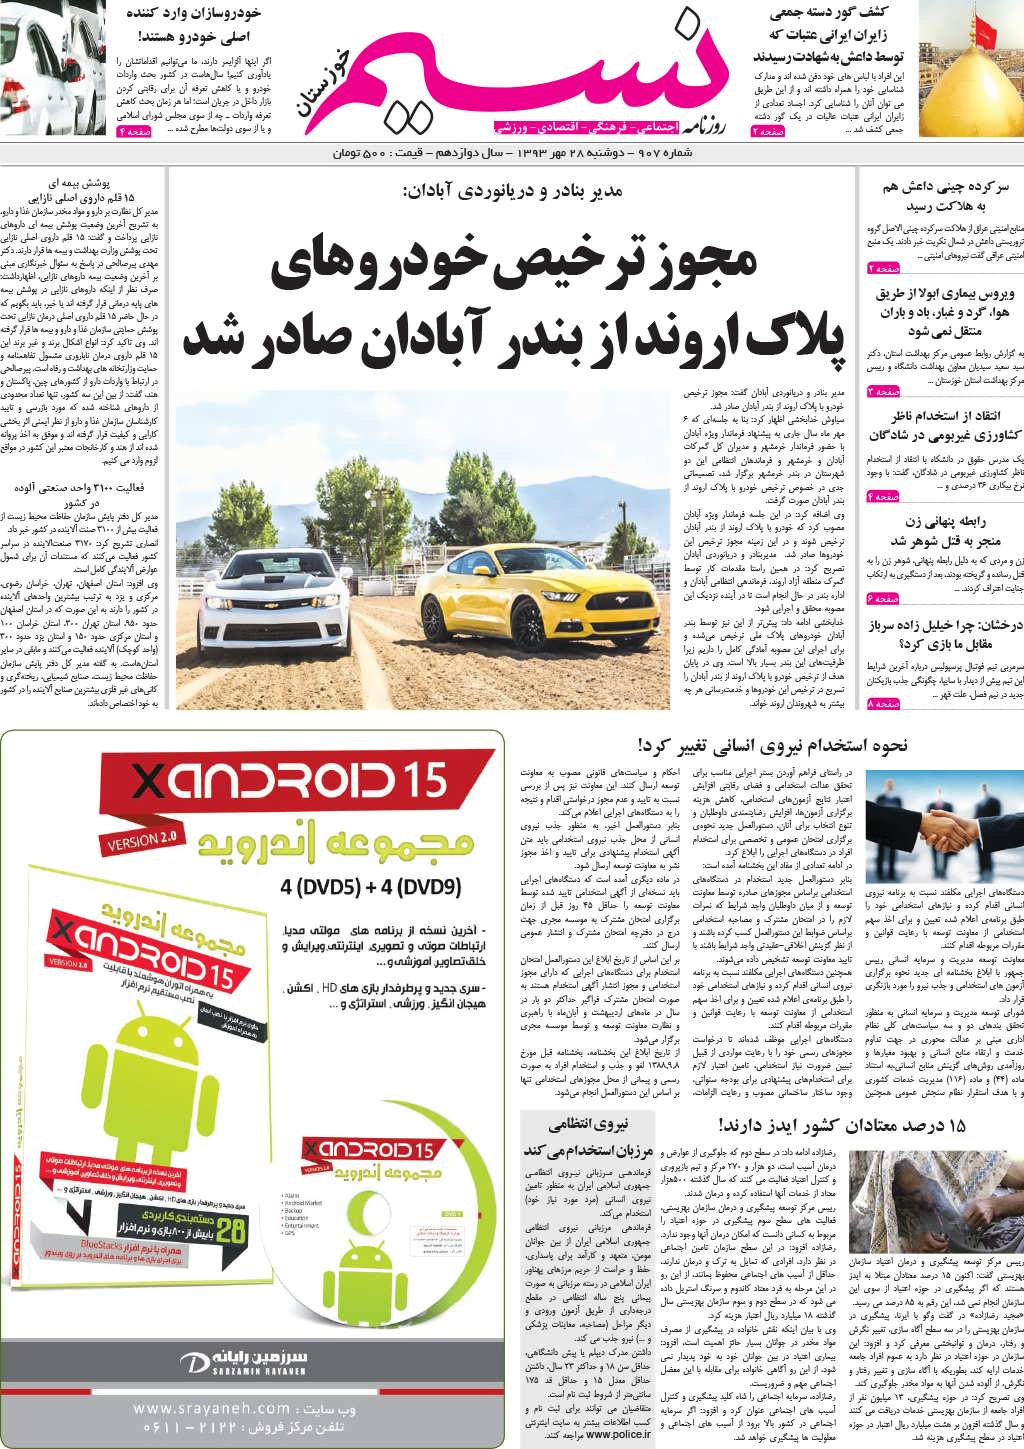 صفحه اصلی روزنامه نسیم شماره 907 